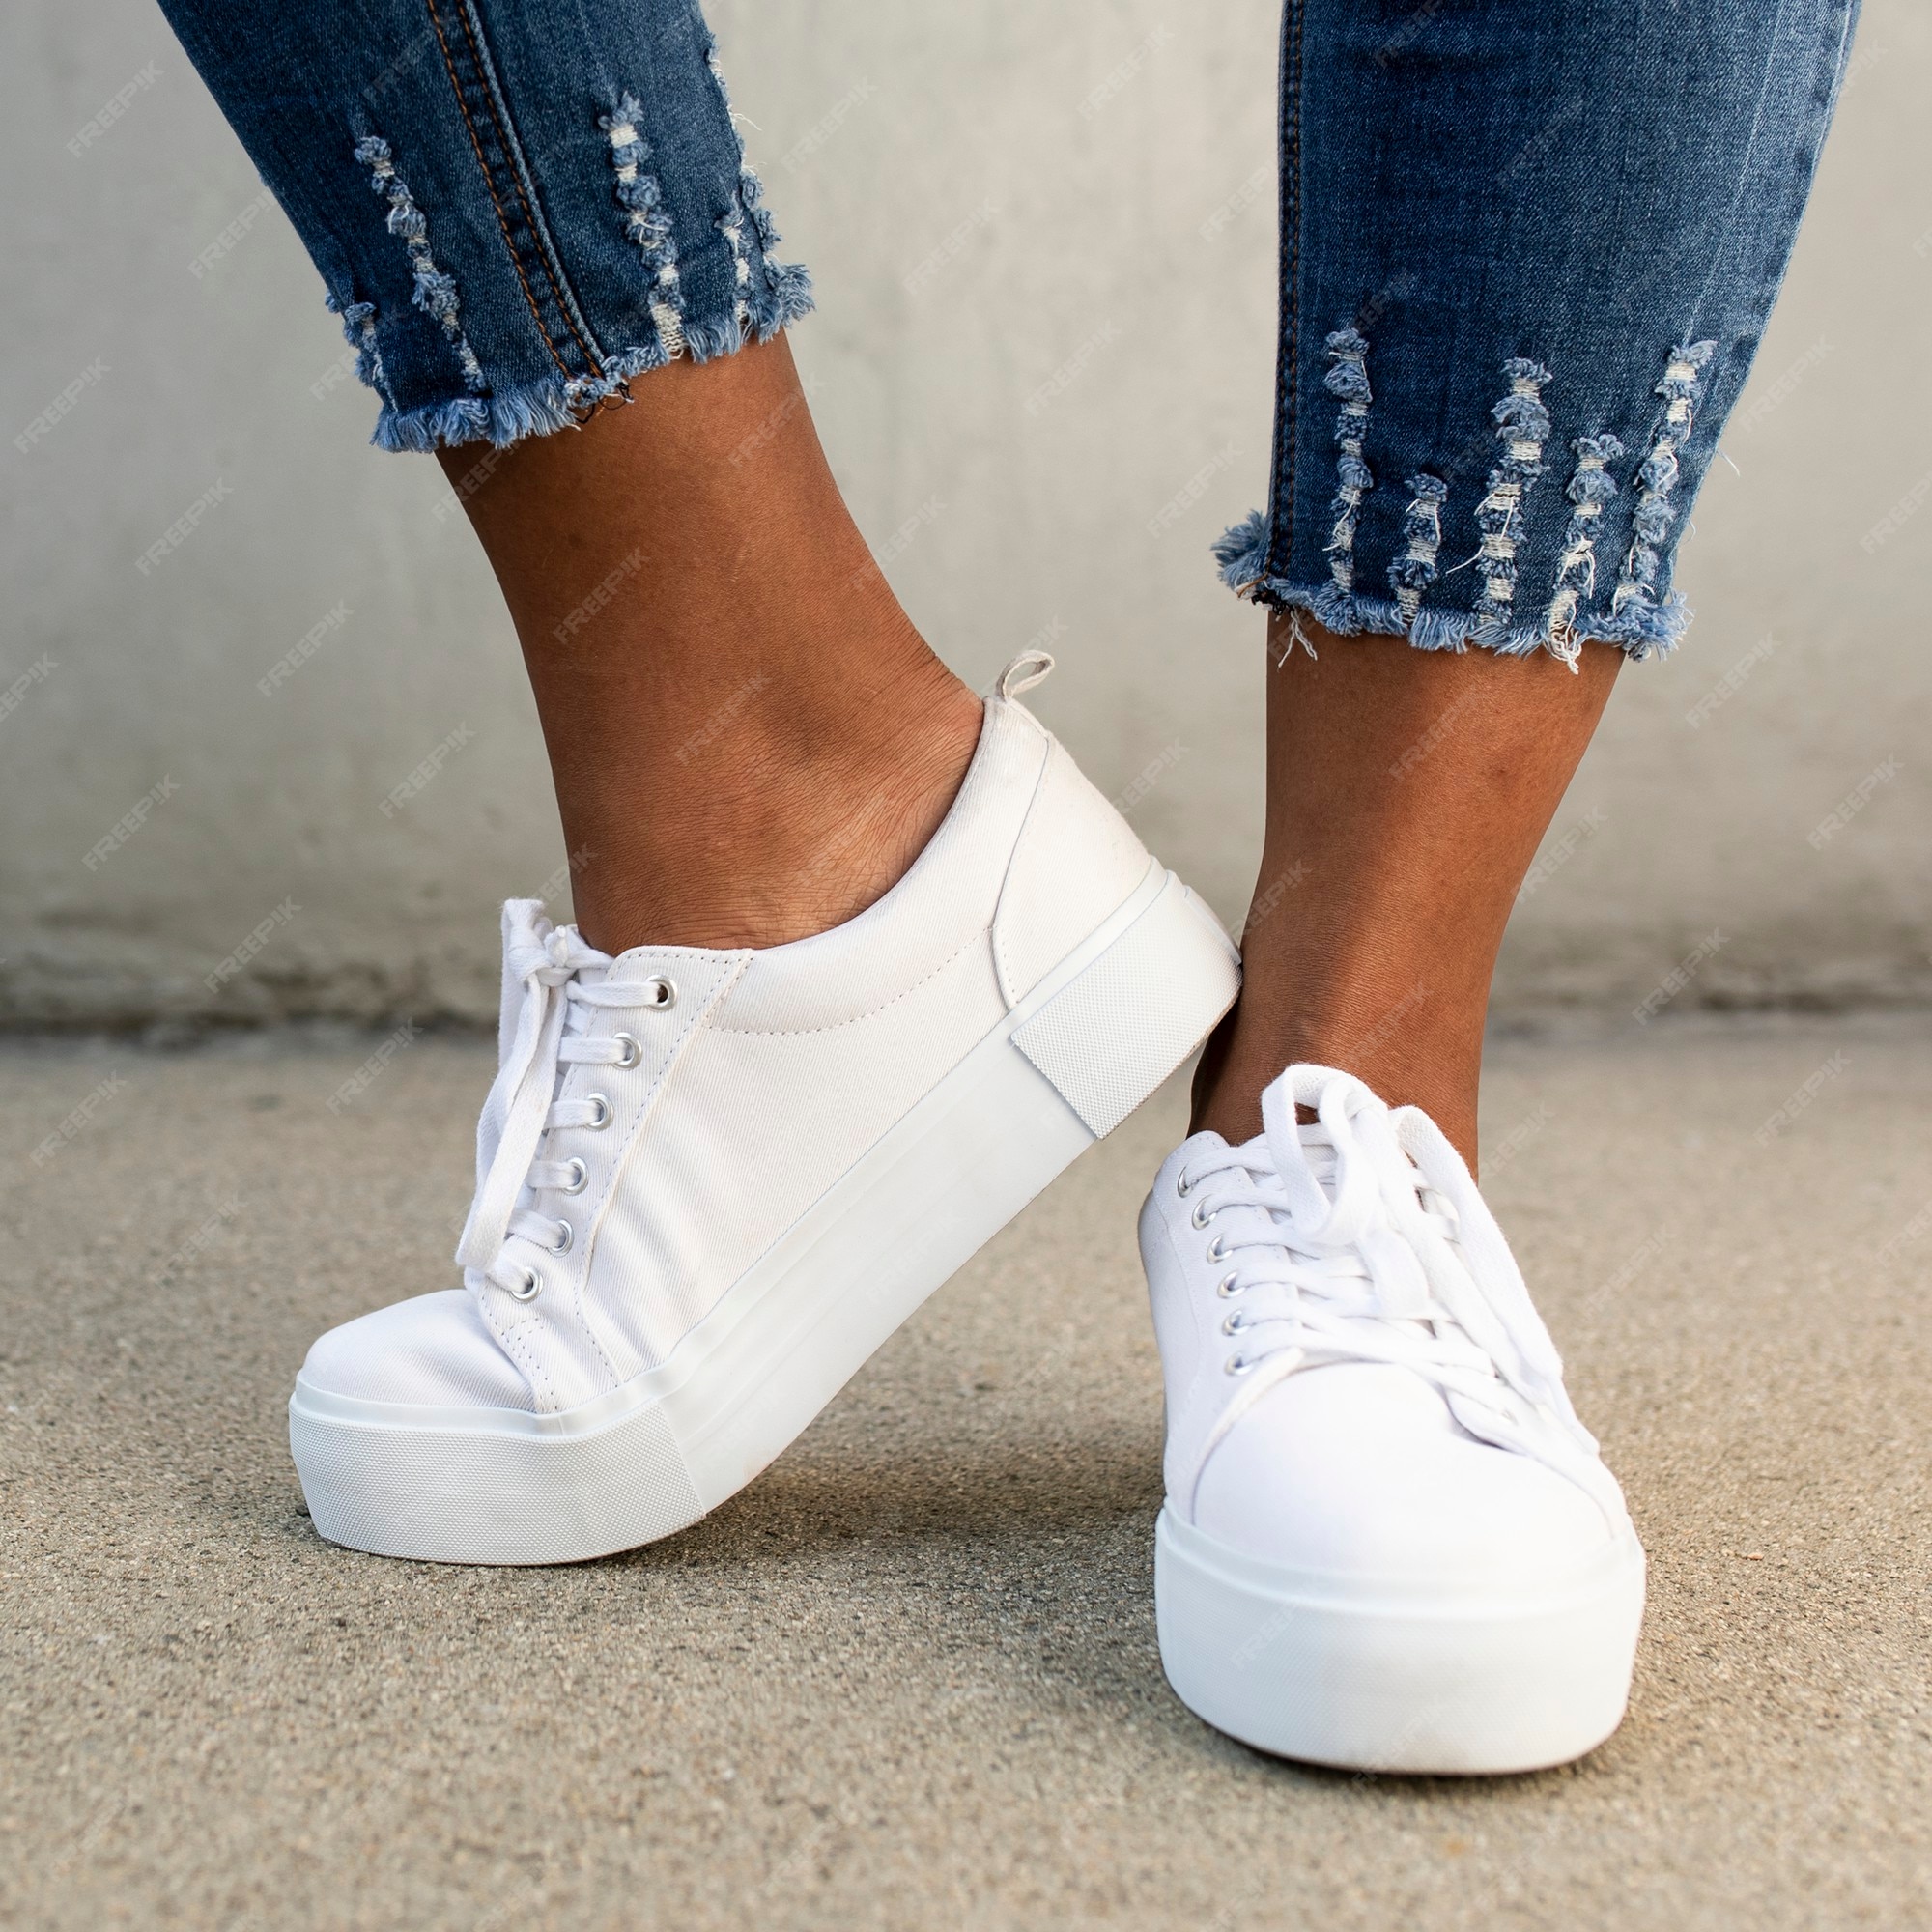 Zapatillas de lona blancas zapatos de mujer sesión | Foto Gratis